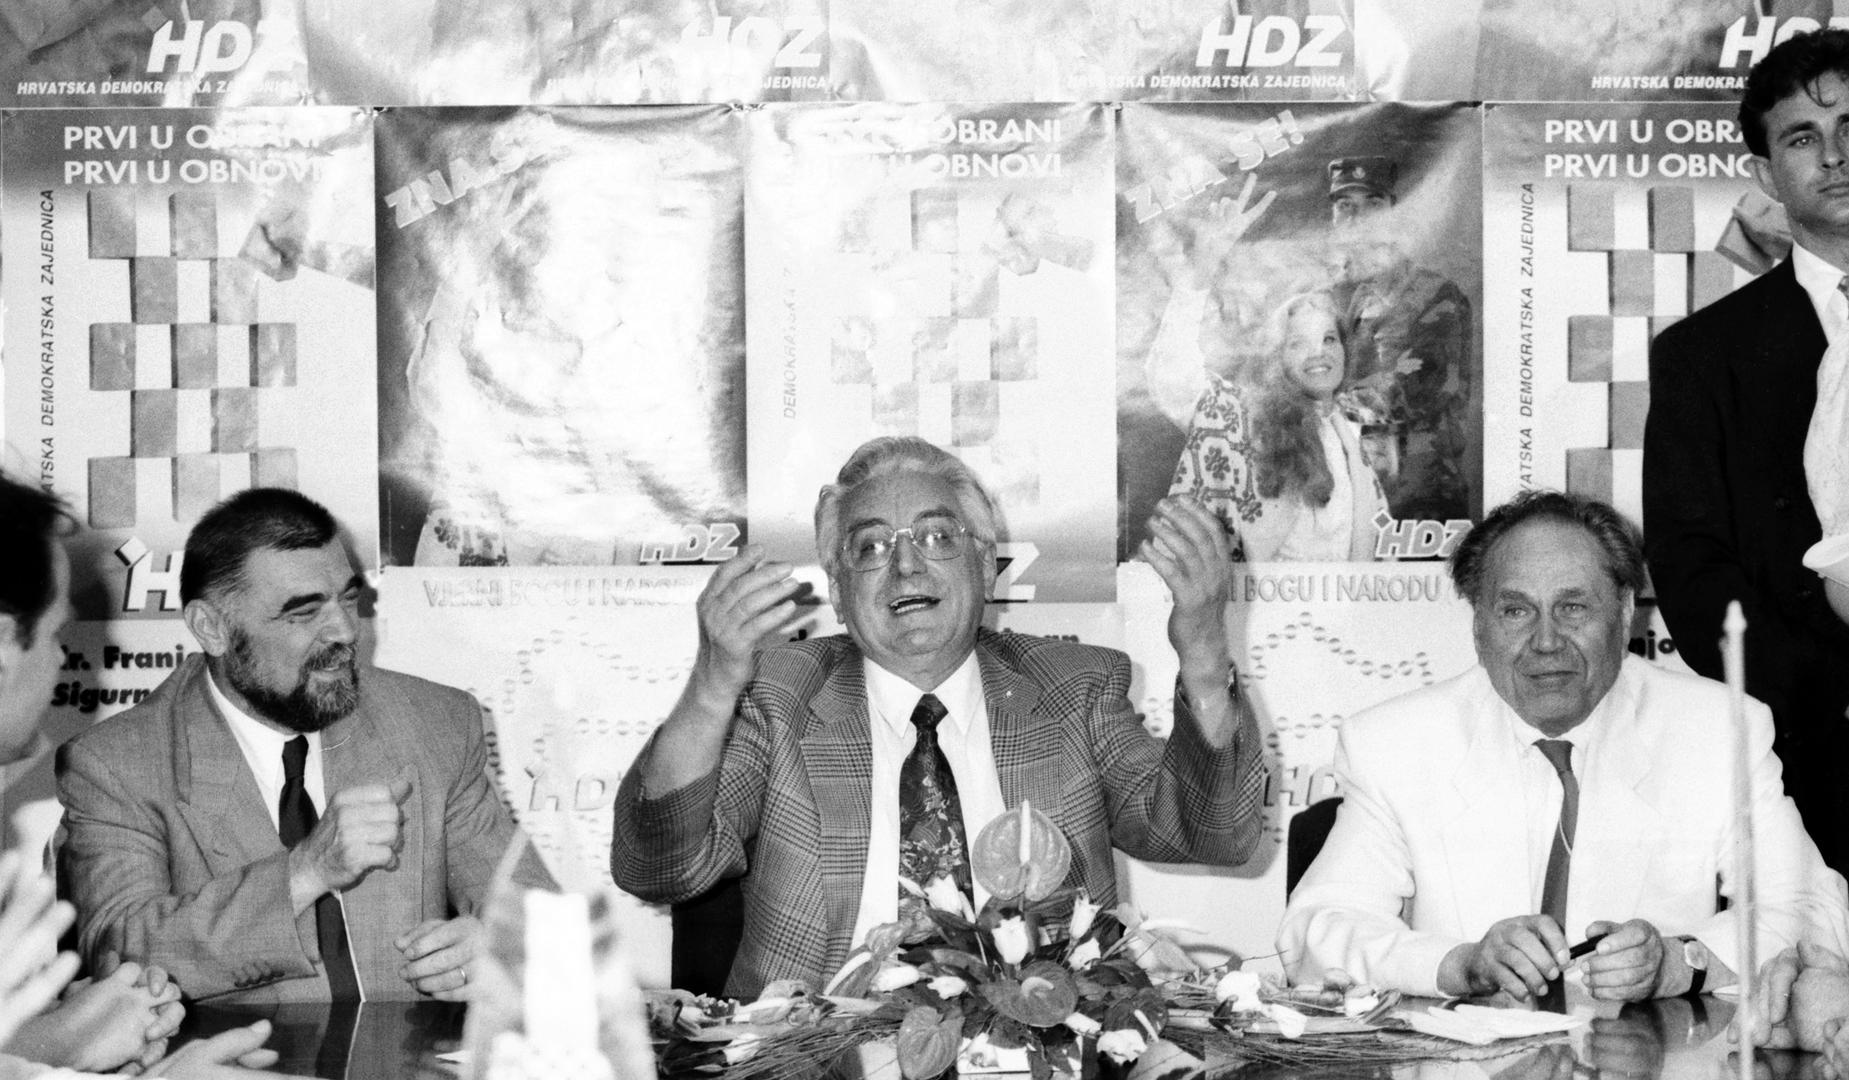 U 1. sazivu Sabora 1990. godine HDZ je u Društveno političkom vijeću (koje se smatra pandanom kasnijih saziva Zastupničkog doma Sabora) imao 55 od ukupno 80 zastupnika. 